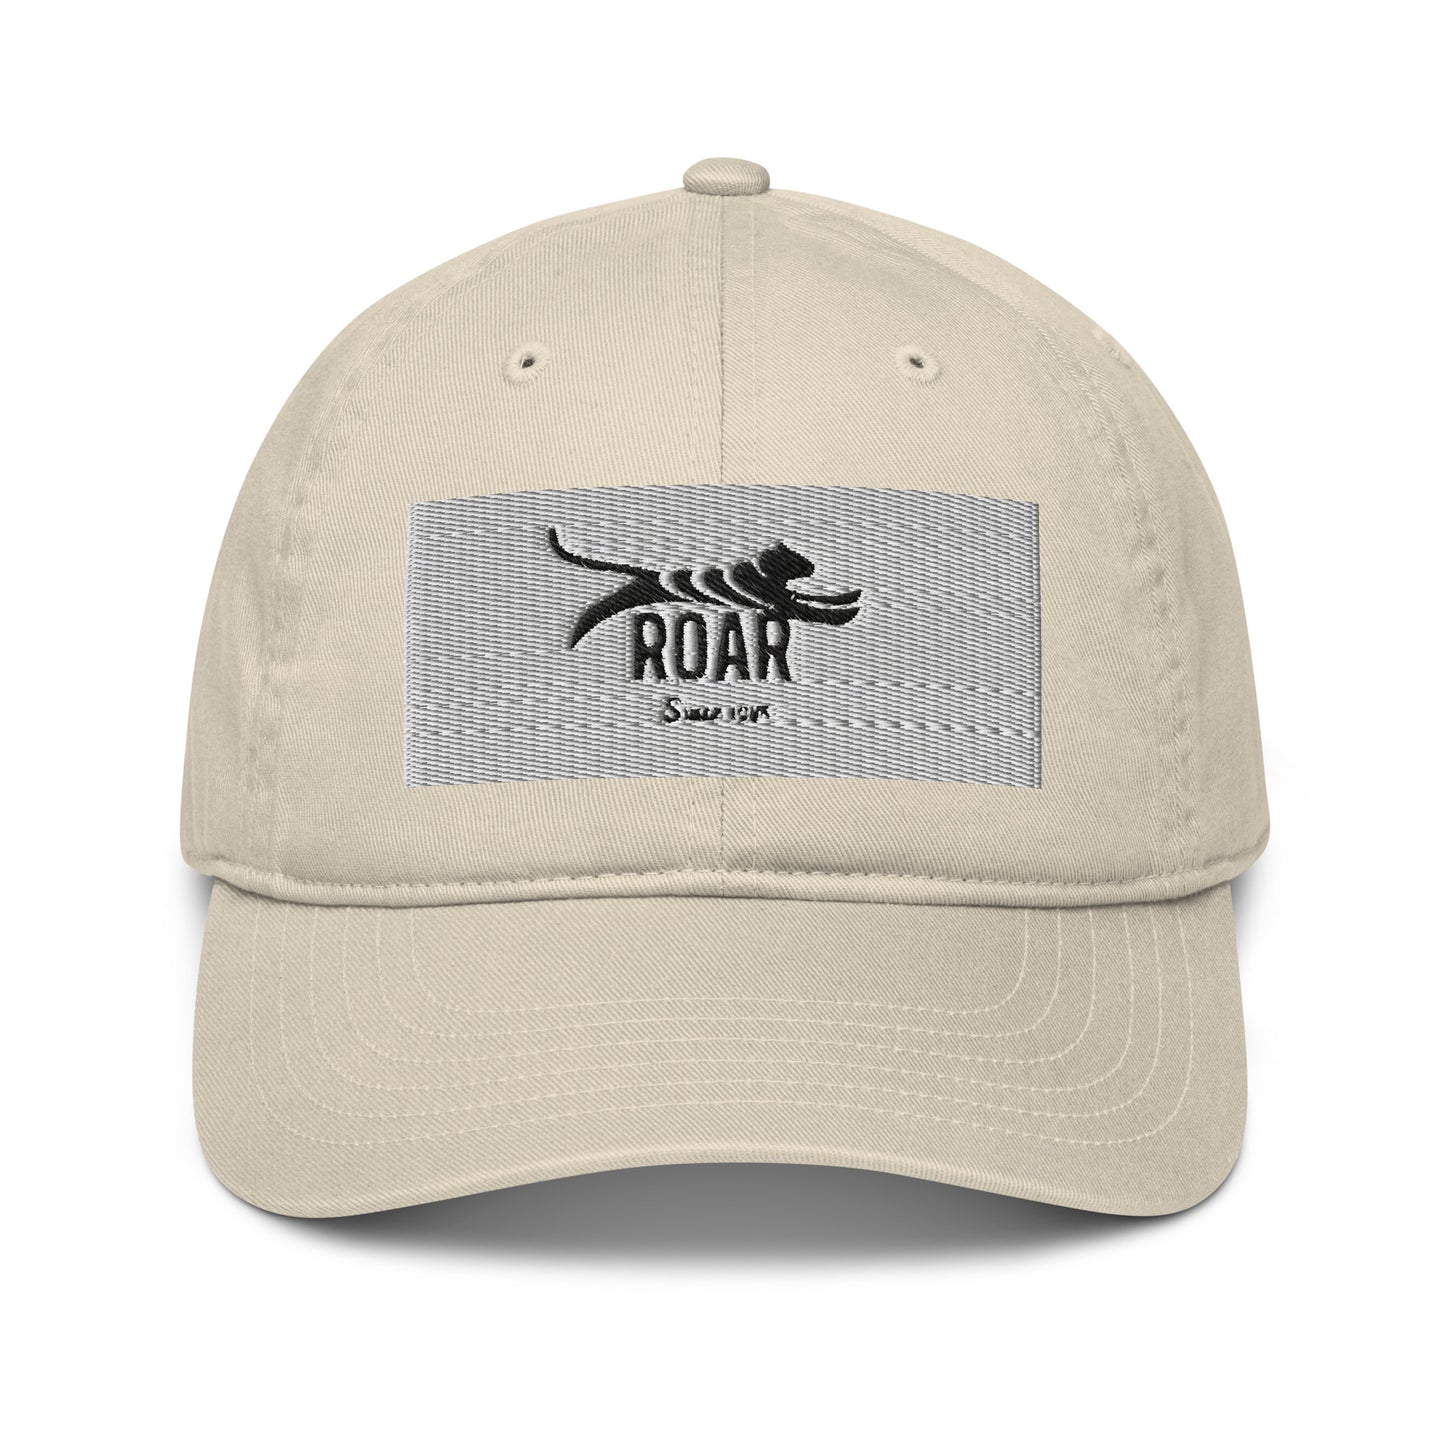 Roar Organic dad hat